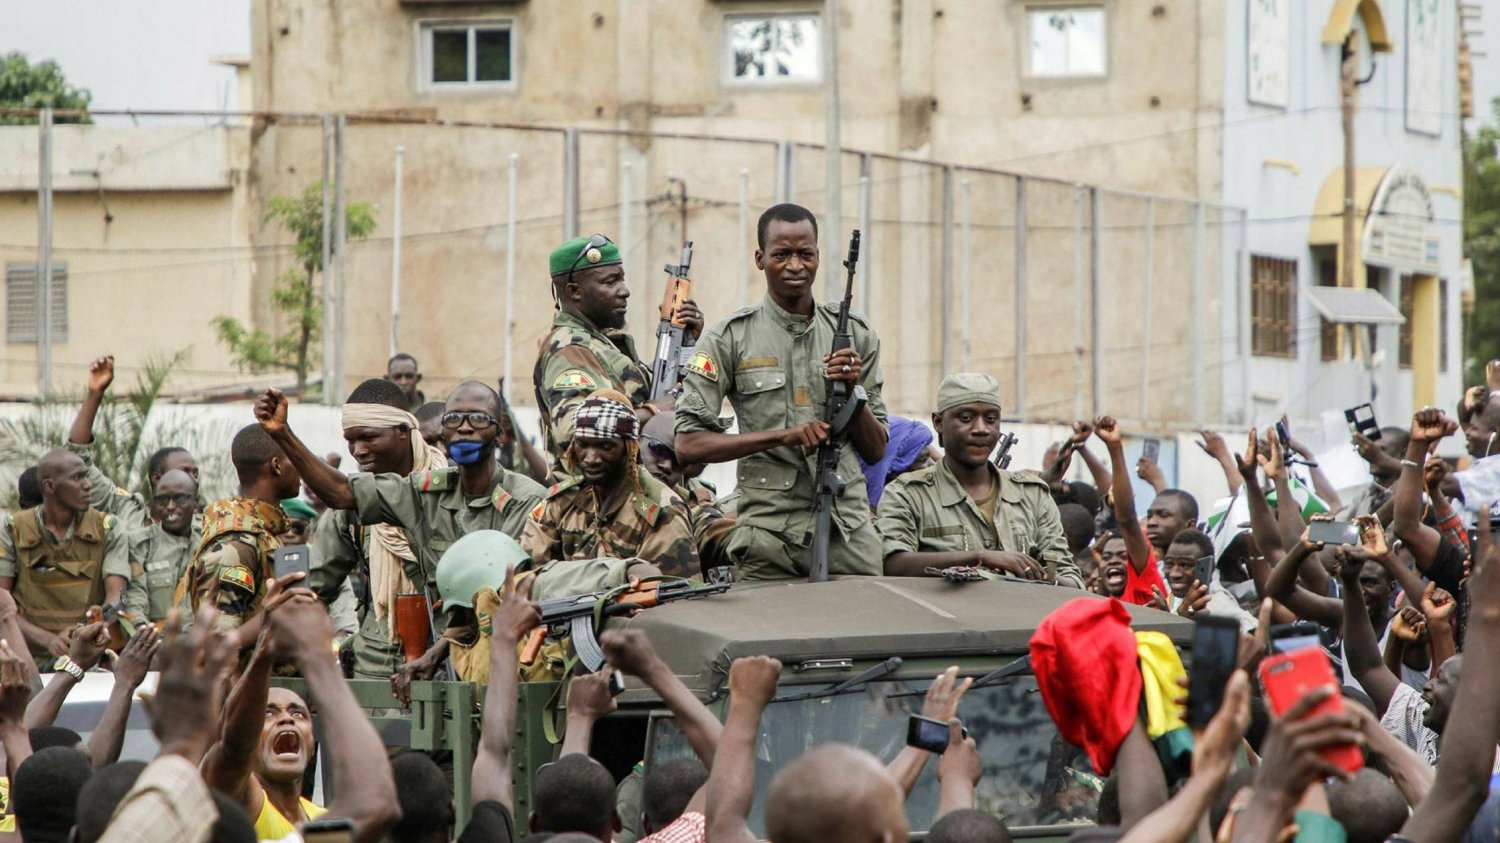 حشود تهتف أثناء عرض لجنود ماليين في شوارع باماكو عاصمة مالي، في أغسطس 2020 (أ.ف.ب)